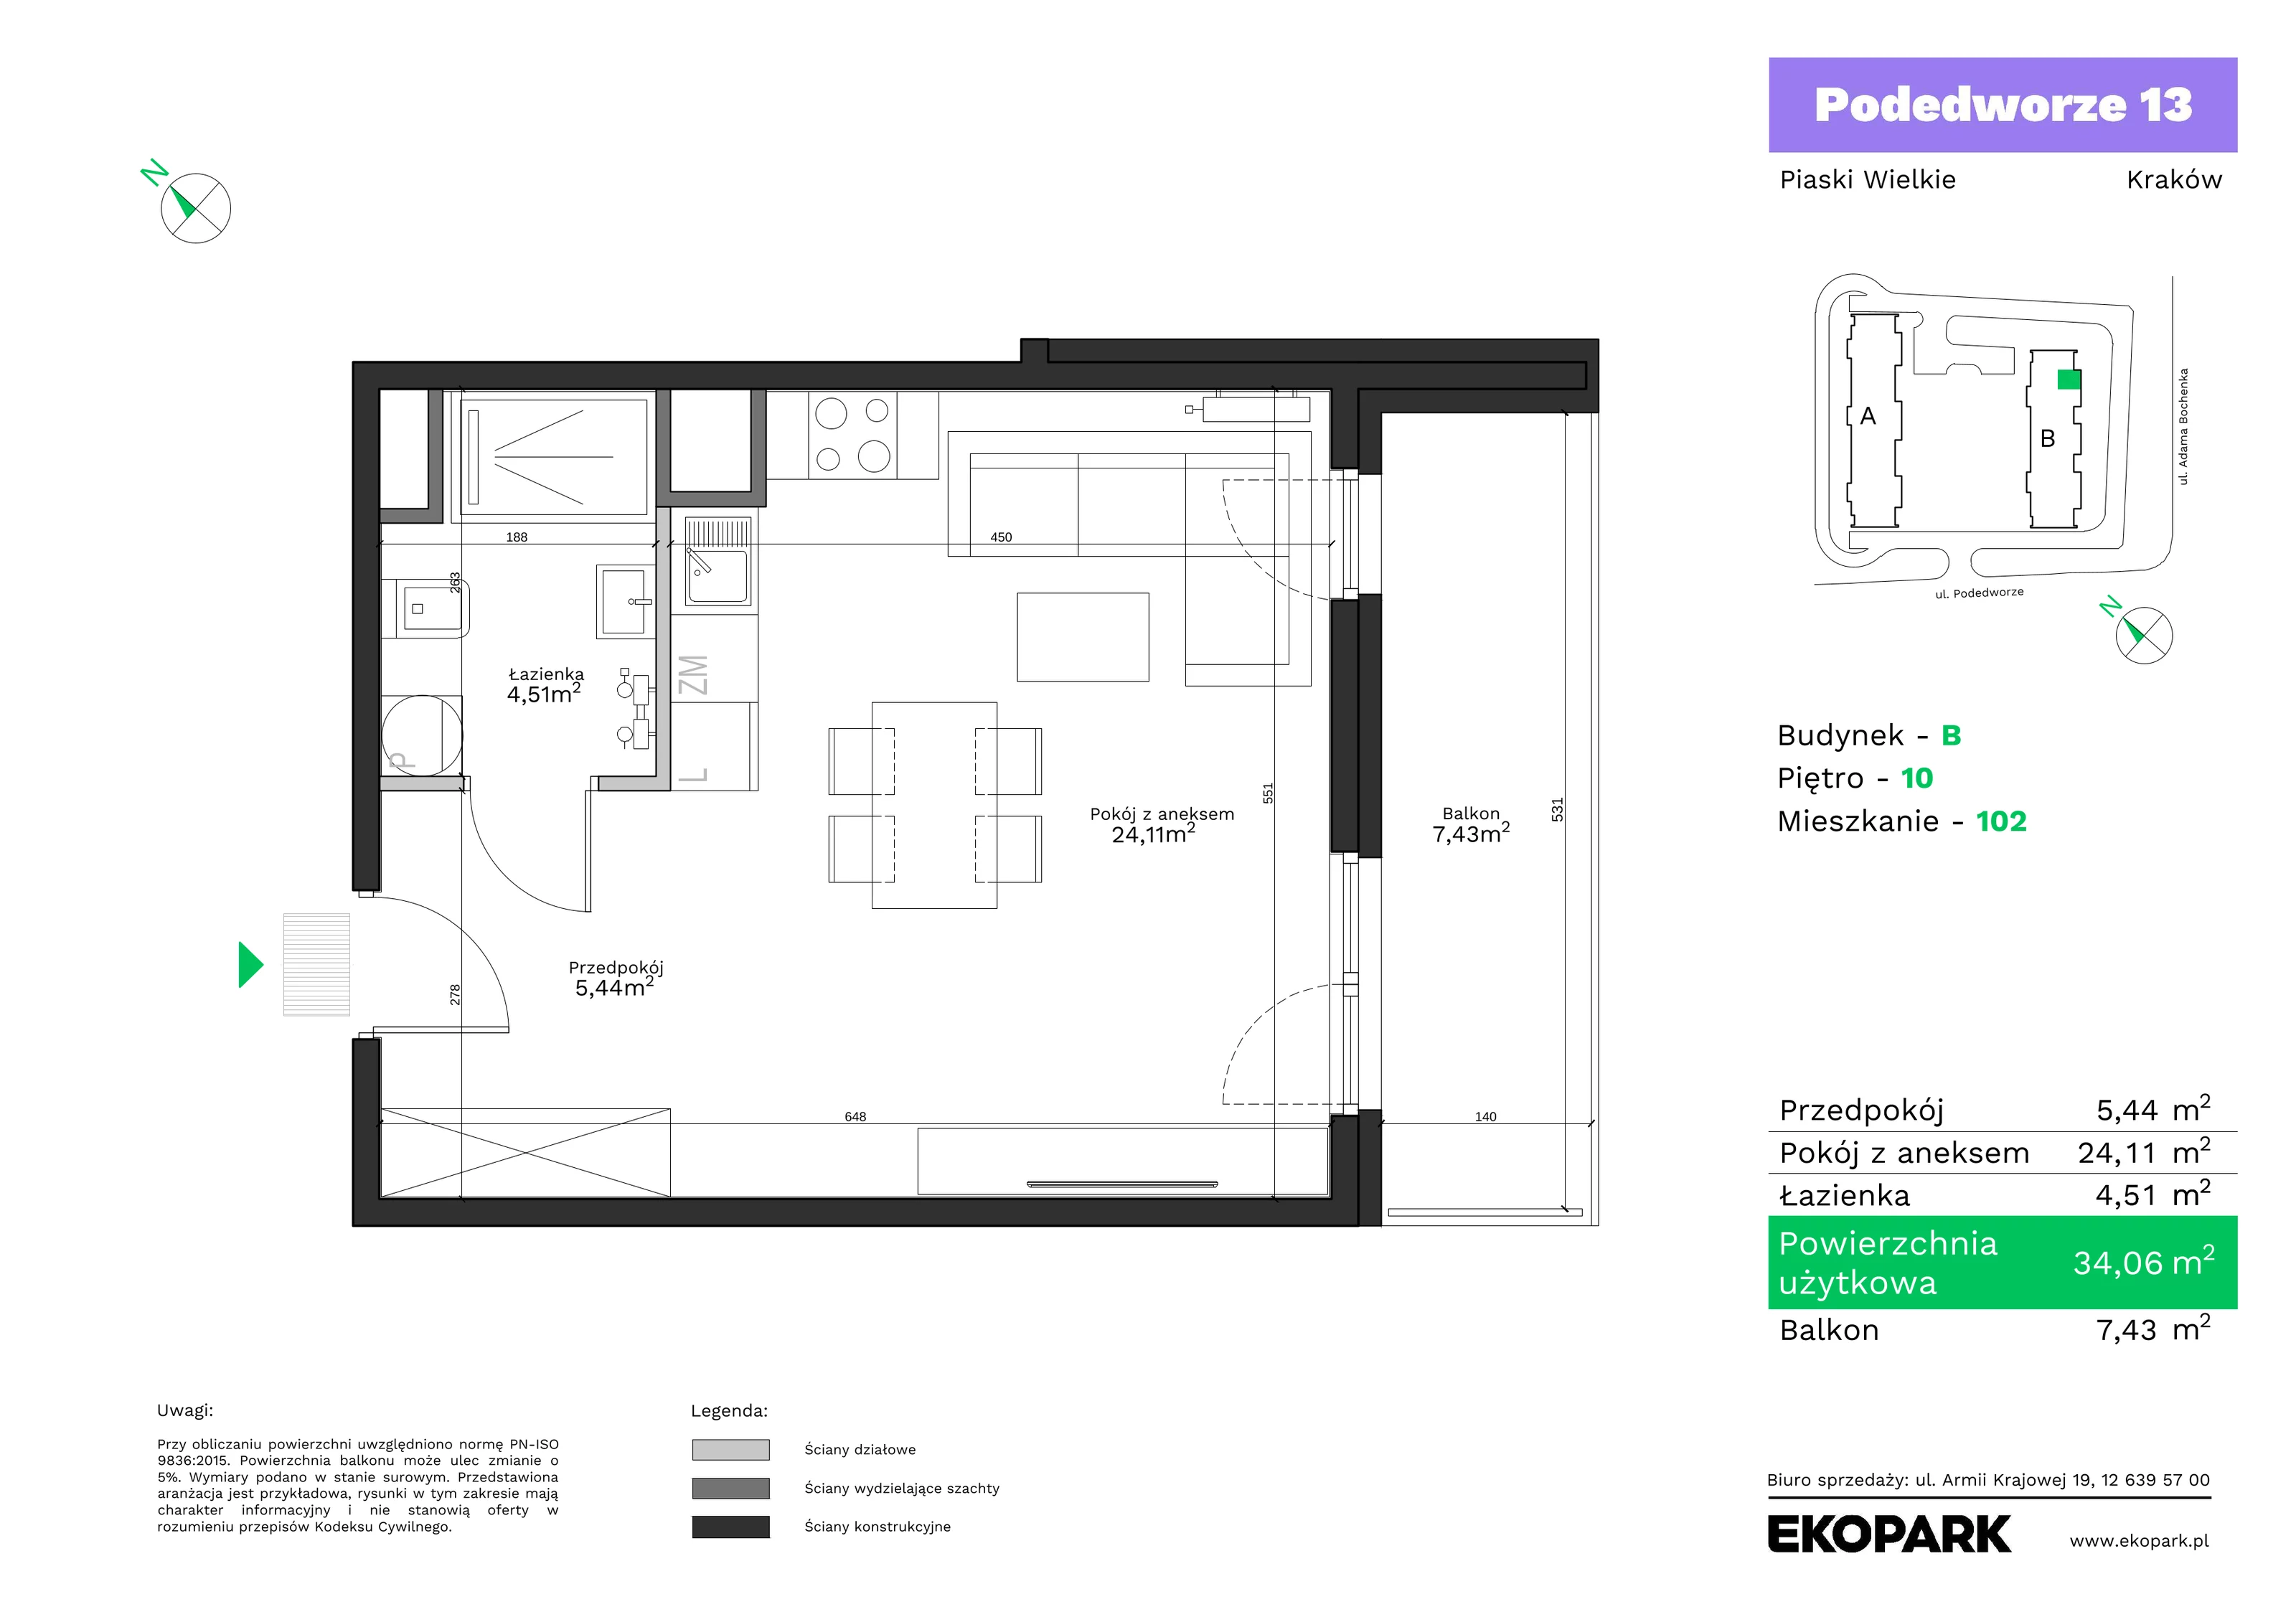 Mieszkanie 34,06 m², piętro 10, oferta nr B102, Podedworze 13, Kraków, Podgórze Duchackie, Piaski Wielkie, ul. Podedworze 13